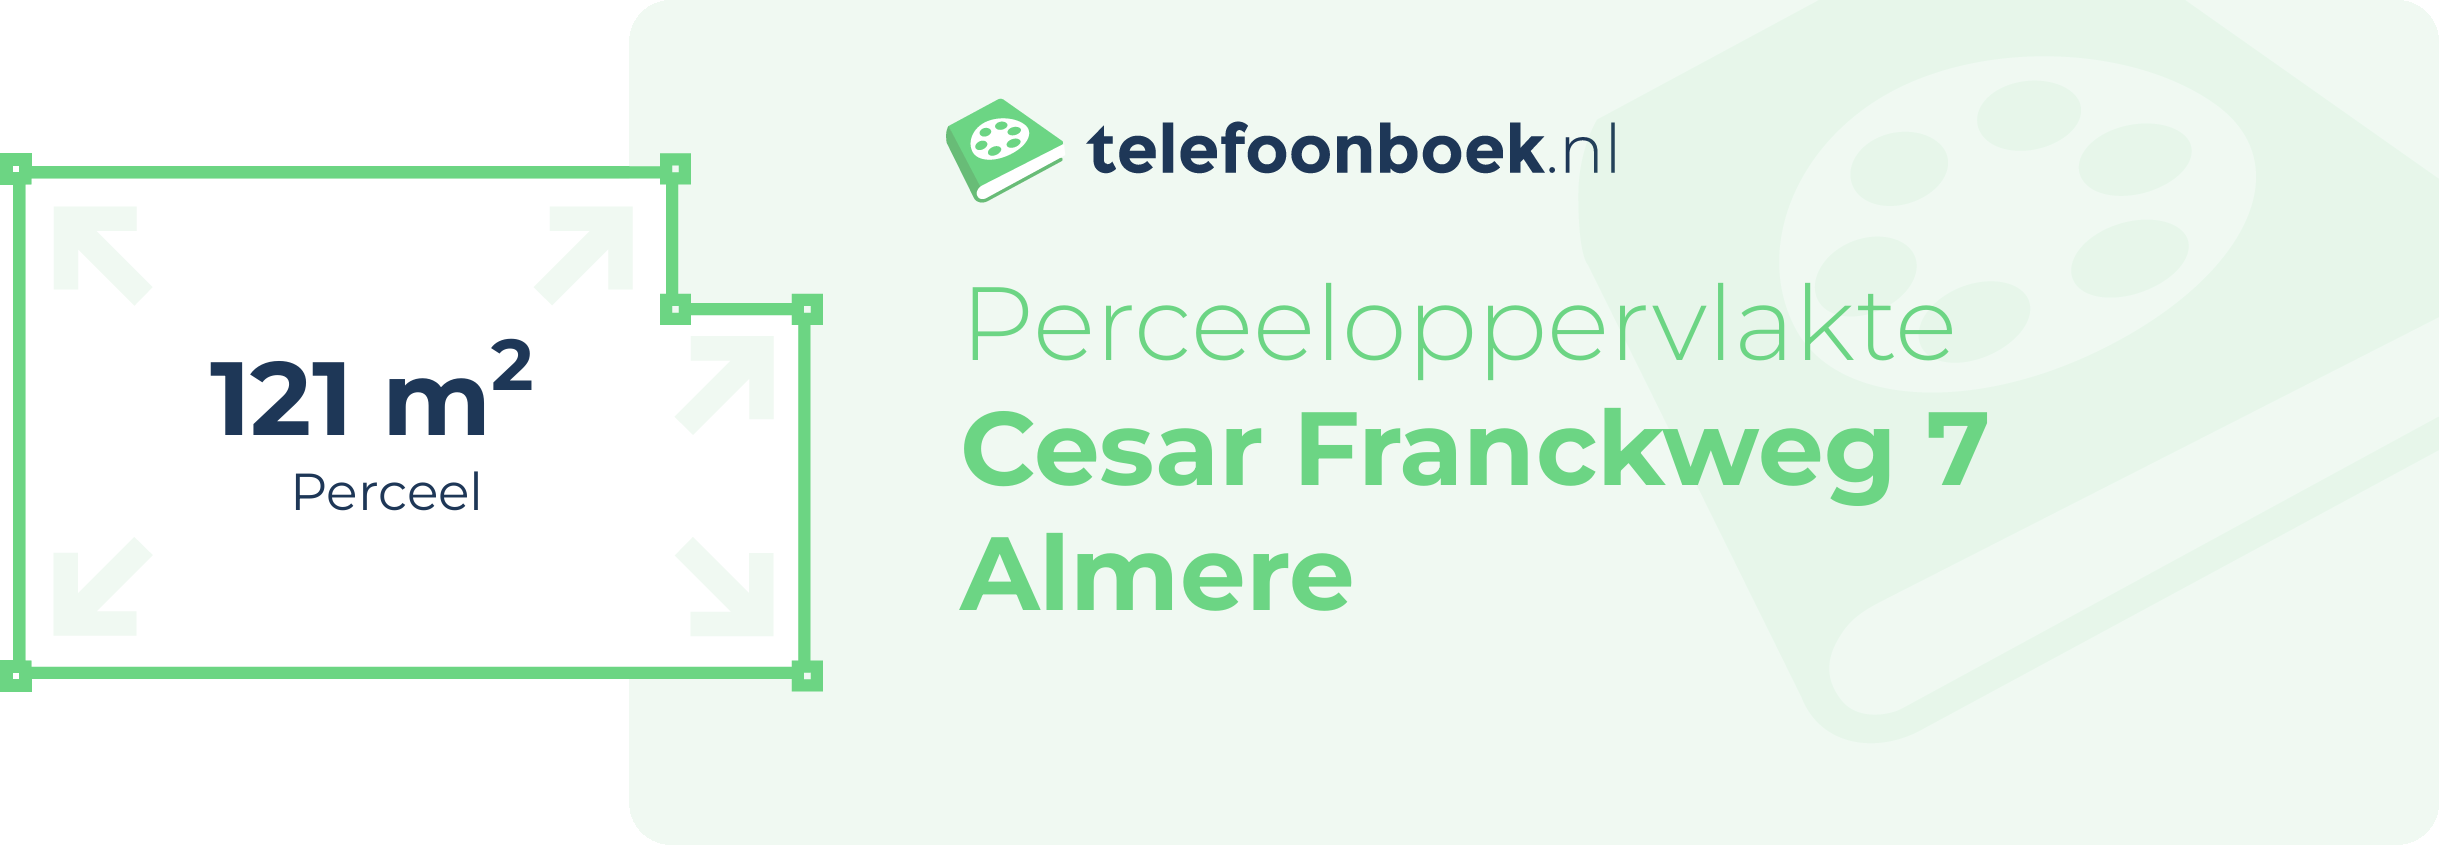 Perceeloppervlakte Cesar Franckweg 7 Almere